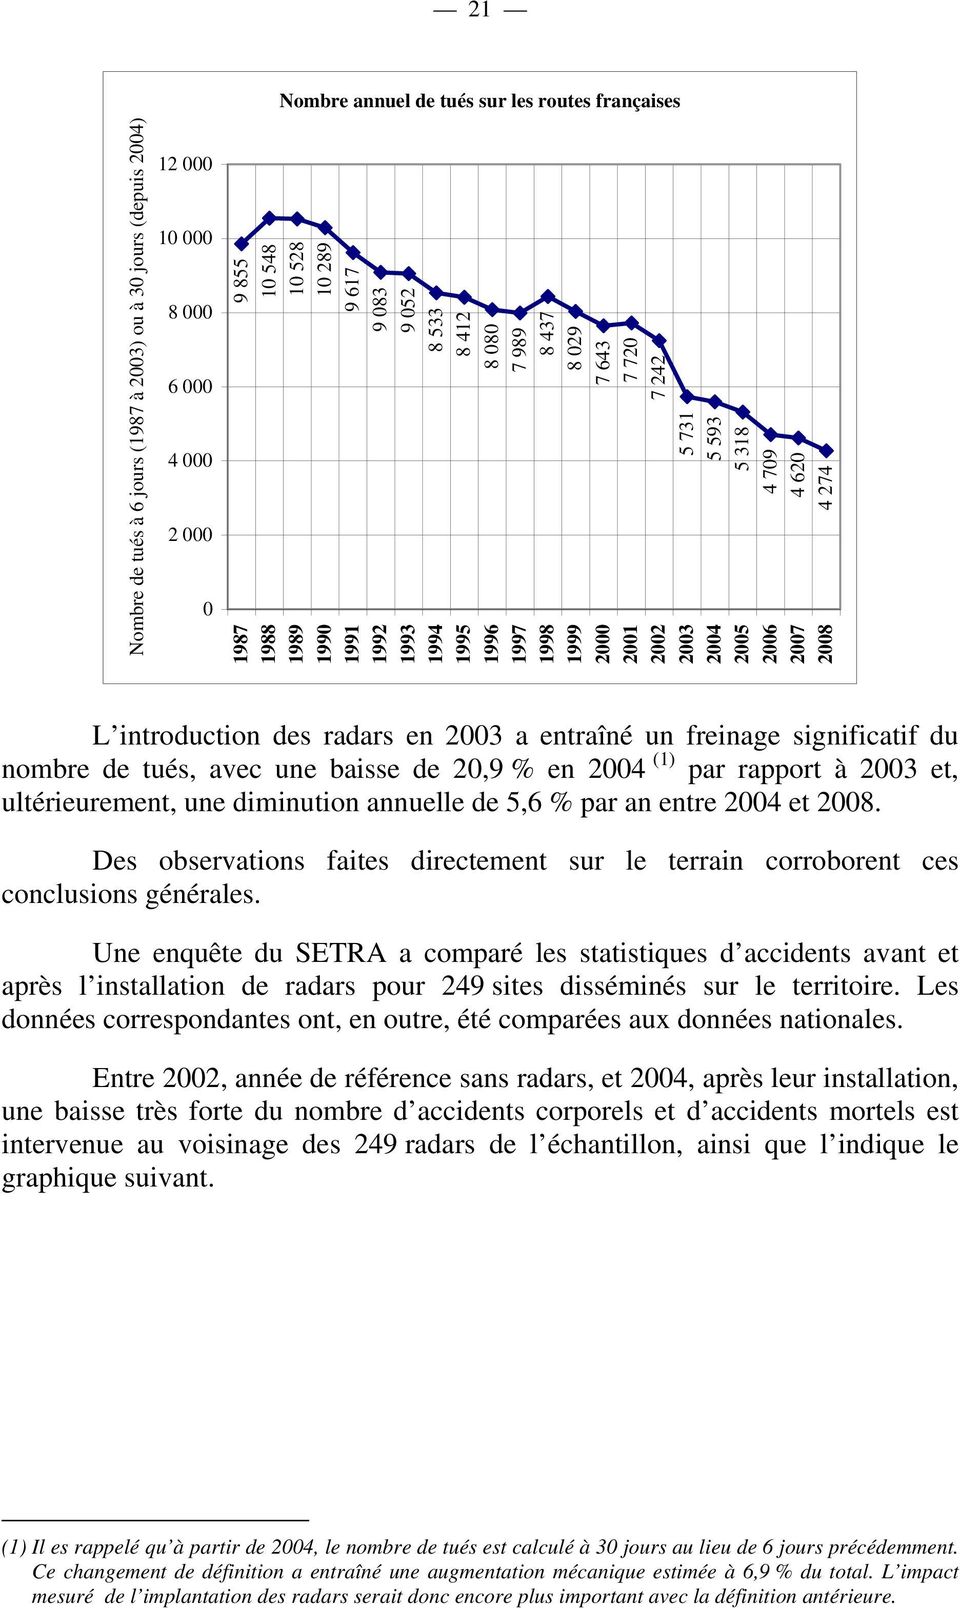 2008 L introduction des radars en 2003 a entraîné un freinage significatif du nombre de tués, avec une baisse de 20,9 % en 2004 (1) par rapport à 2003 et, ultérieurement, une diminution annuelle de